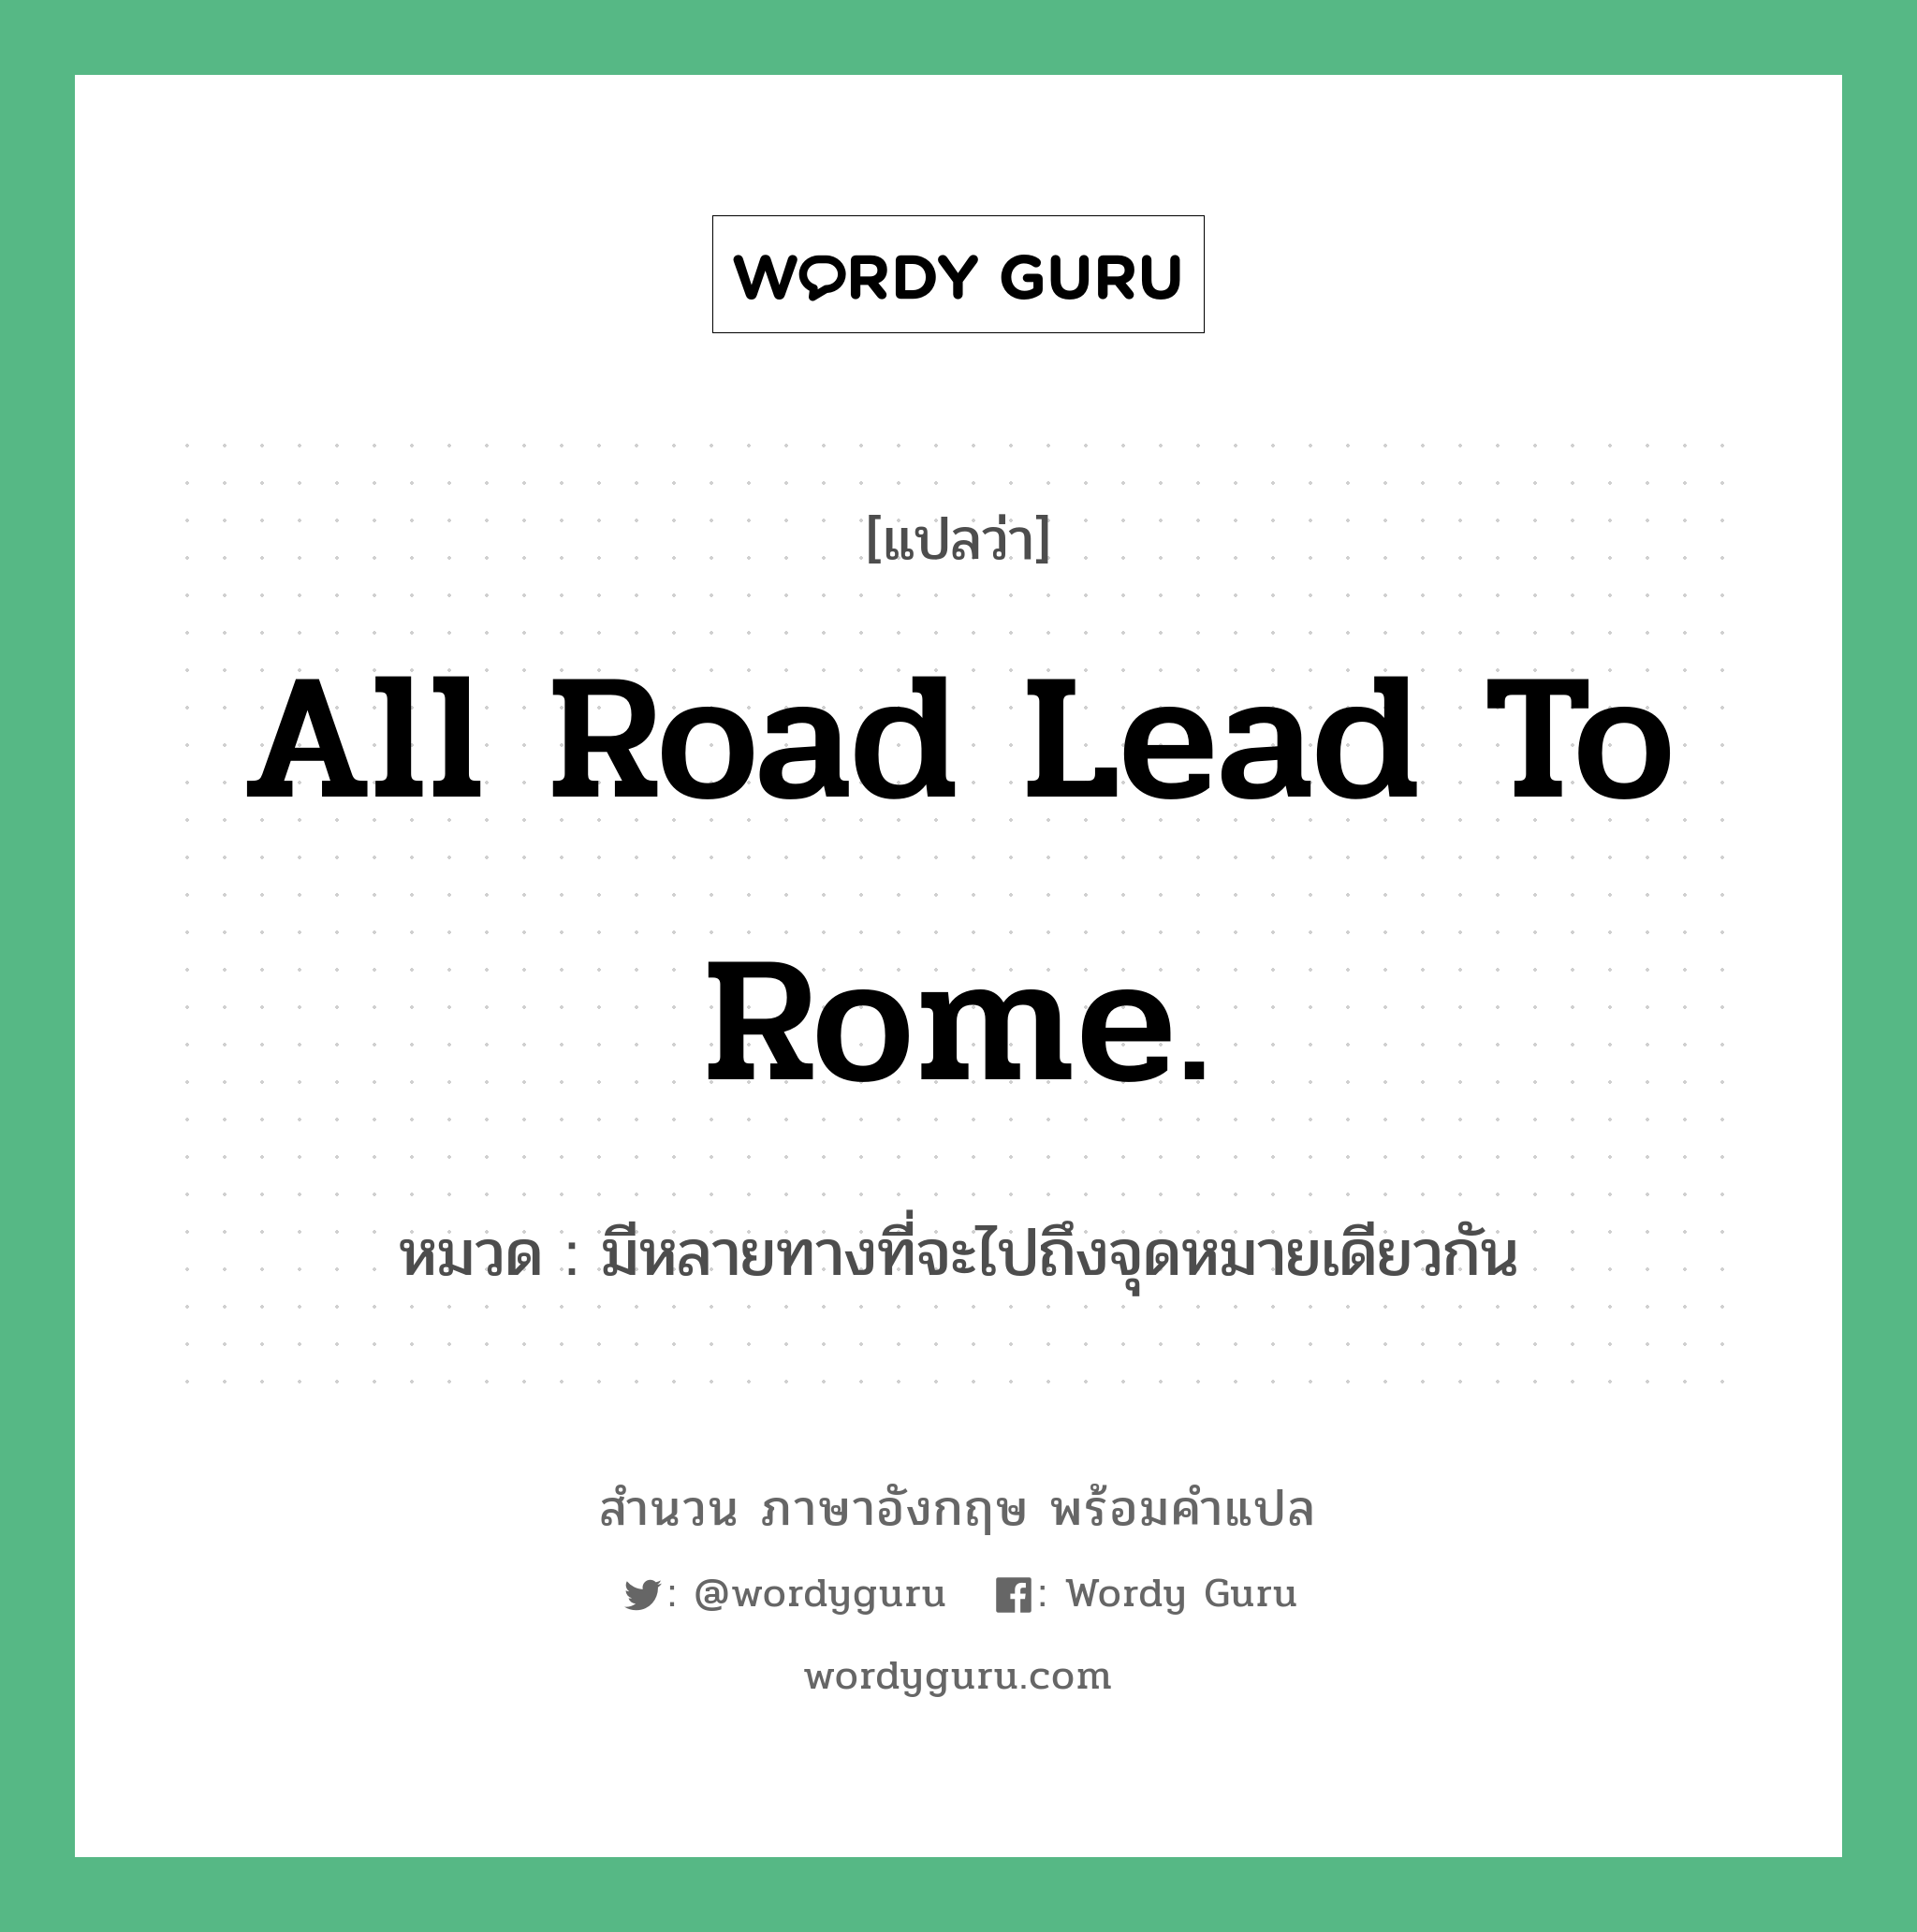 All road lead to Rome. แปลว่า?, สำนวนภาษาอังกฤษ All road lead to Rome. หมวด มีหลายทางที่จะไปถึงจุดหมายเดียวกัน คำสุภาษิต ภาษาอังกฤษ หมวด คำสุภาษิต ภาษาอังกฤษ